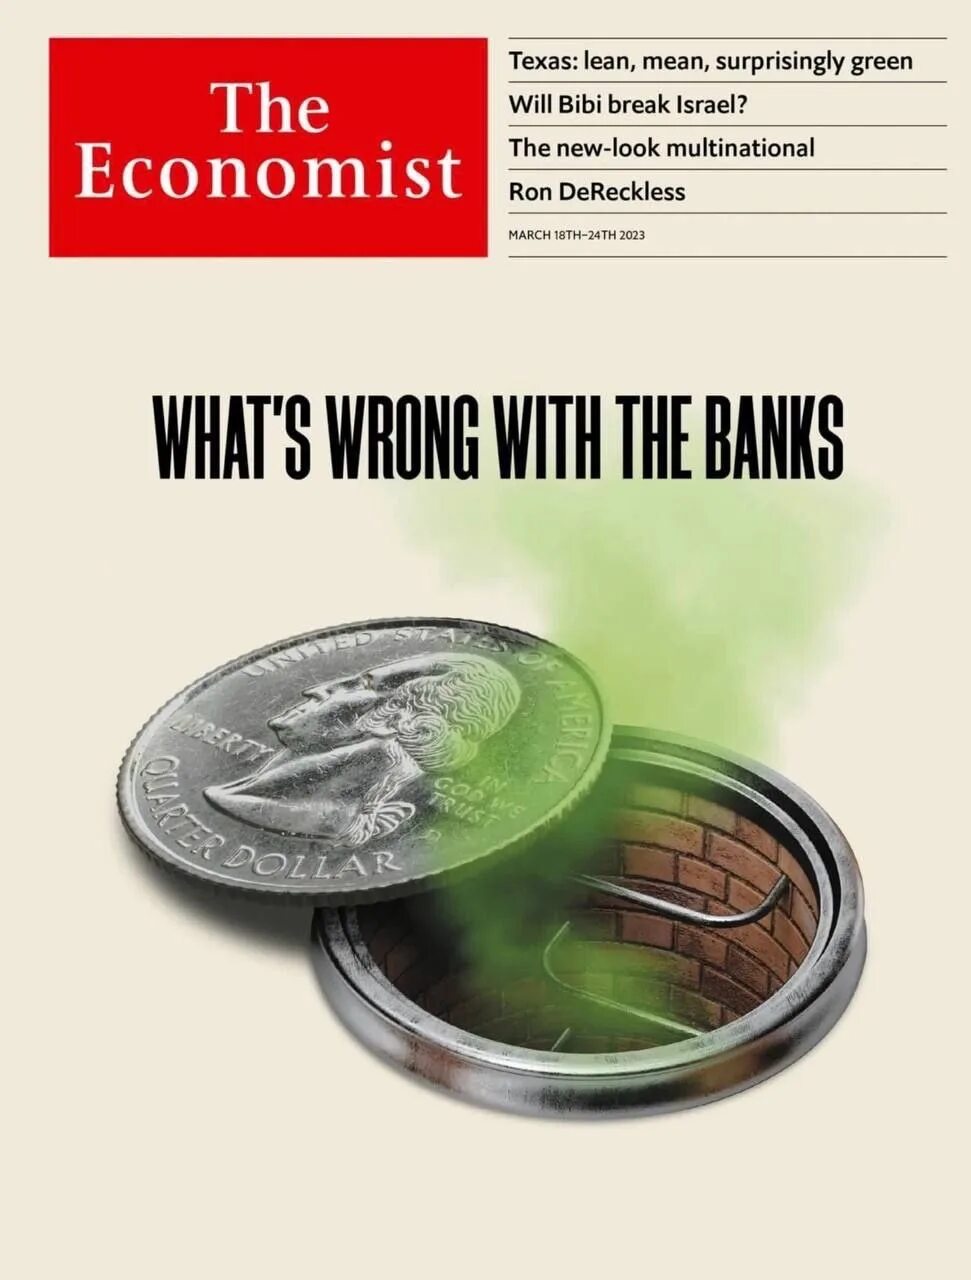 The Economist 2023 обложка. The Economist обложка. Новая обложка the Economist. Обложка журнала экономист 2023.